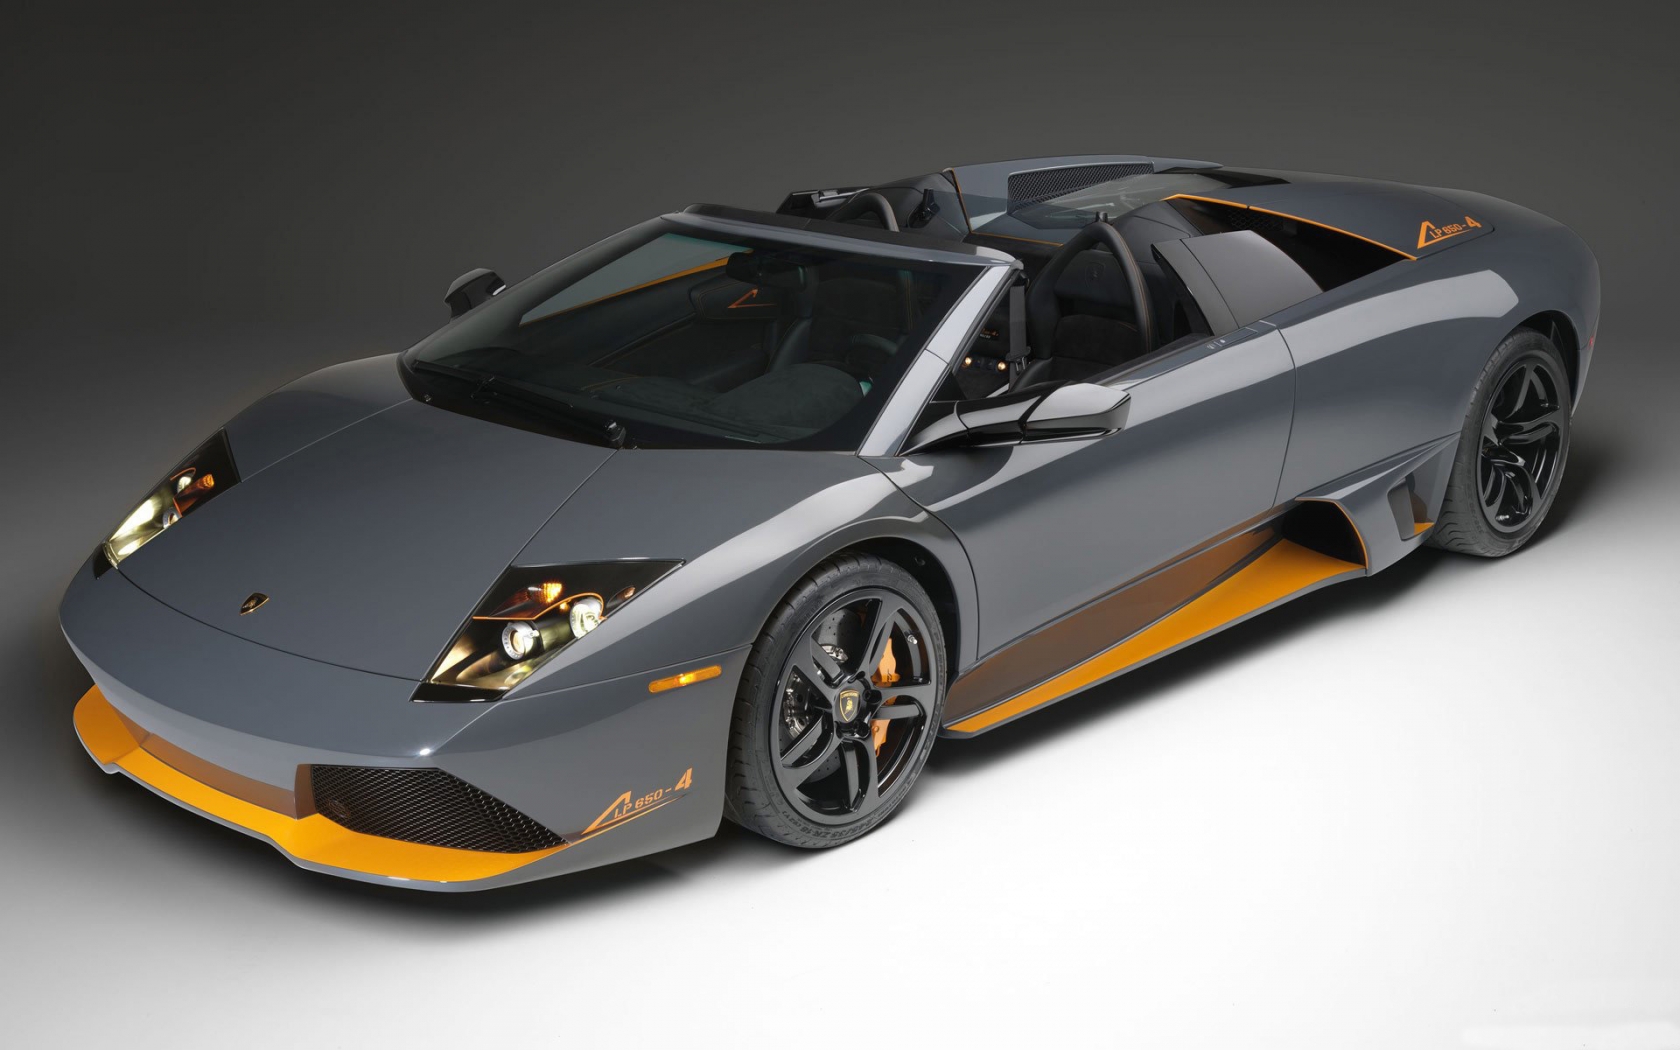 Lamborghini lp 650 Front Angle for 1680 x 1050 widescreen resolution